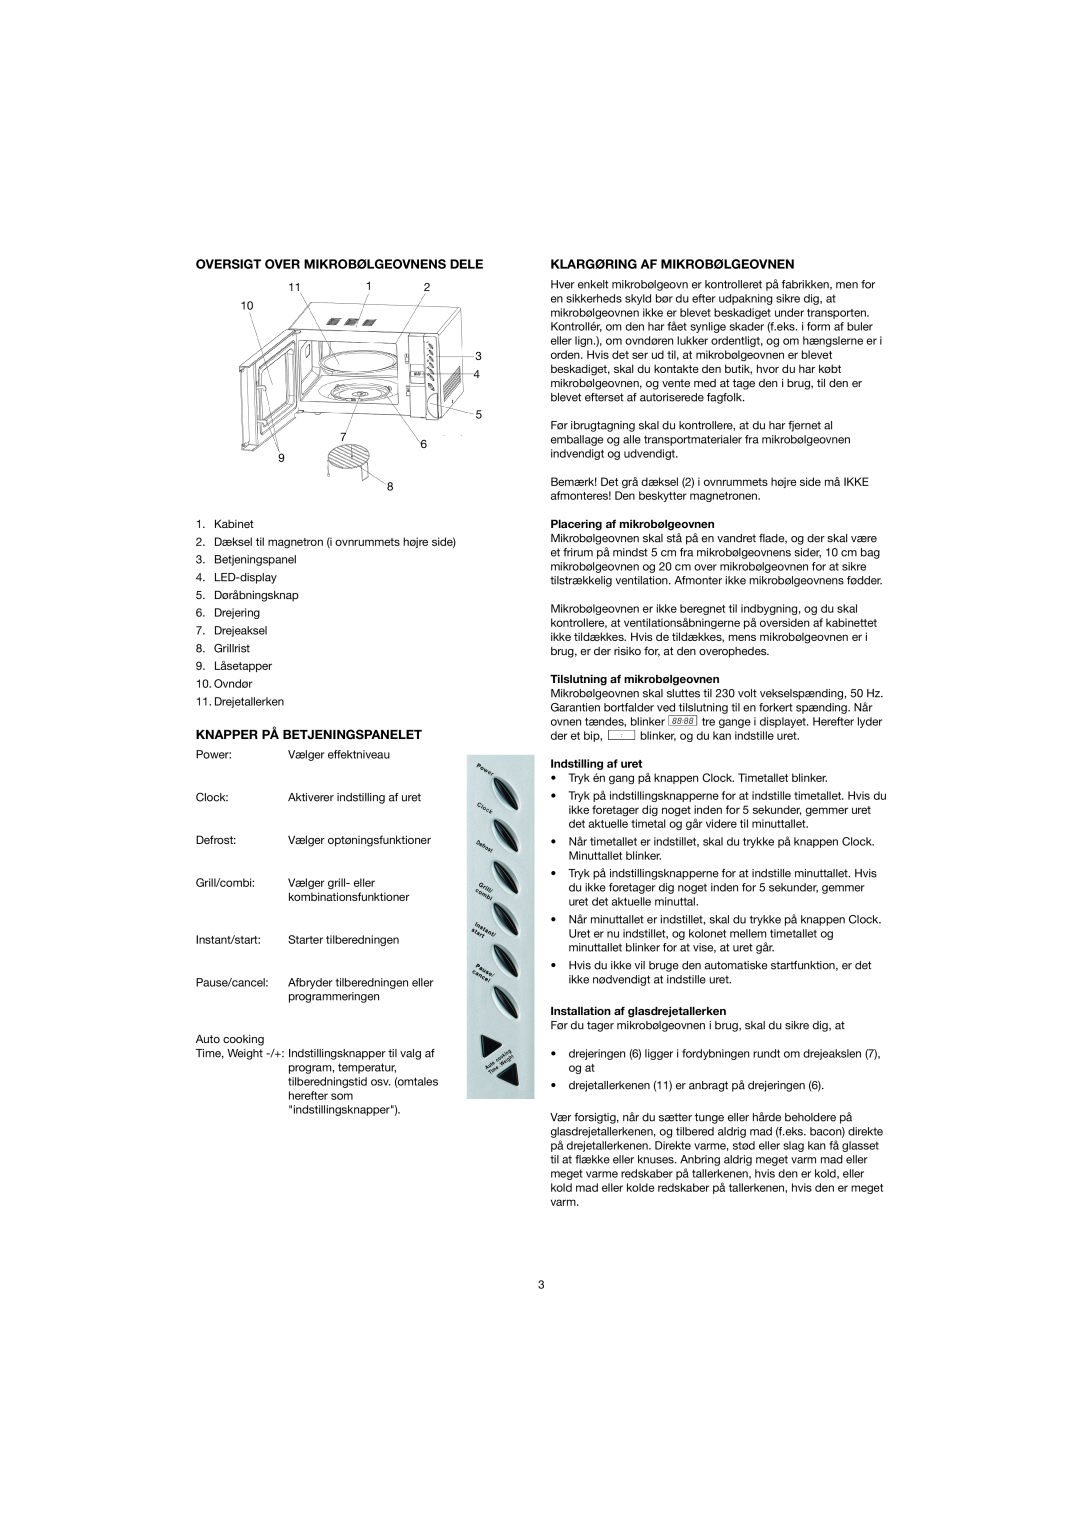 Melissa 753-082/083 manual Oversigt Over Mikrobølgeovnens Dele, Klargøring Af Mikrobølgeovnen, Knapper På Betjeningspanelet 